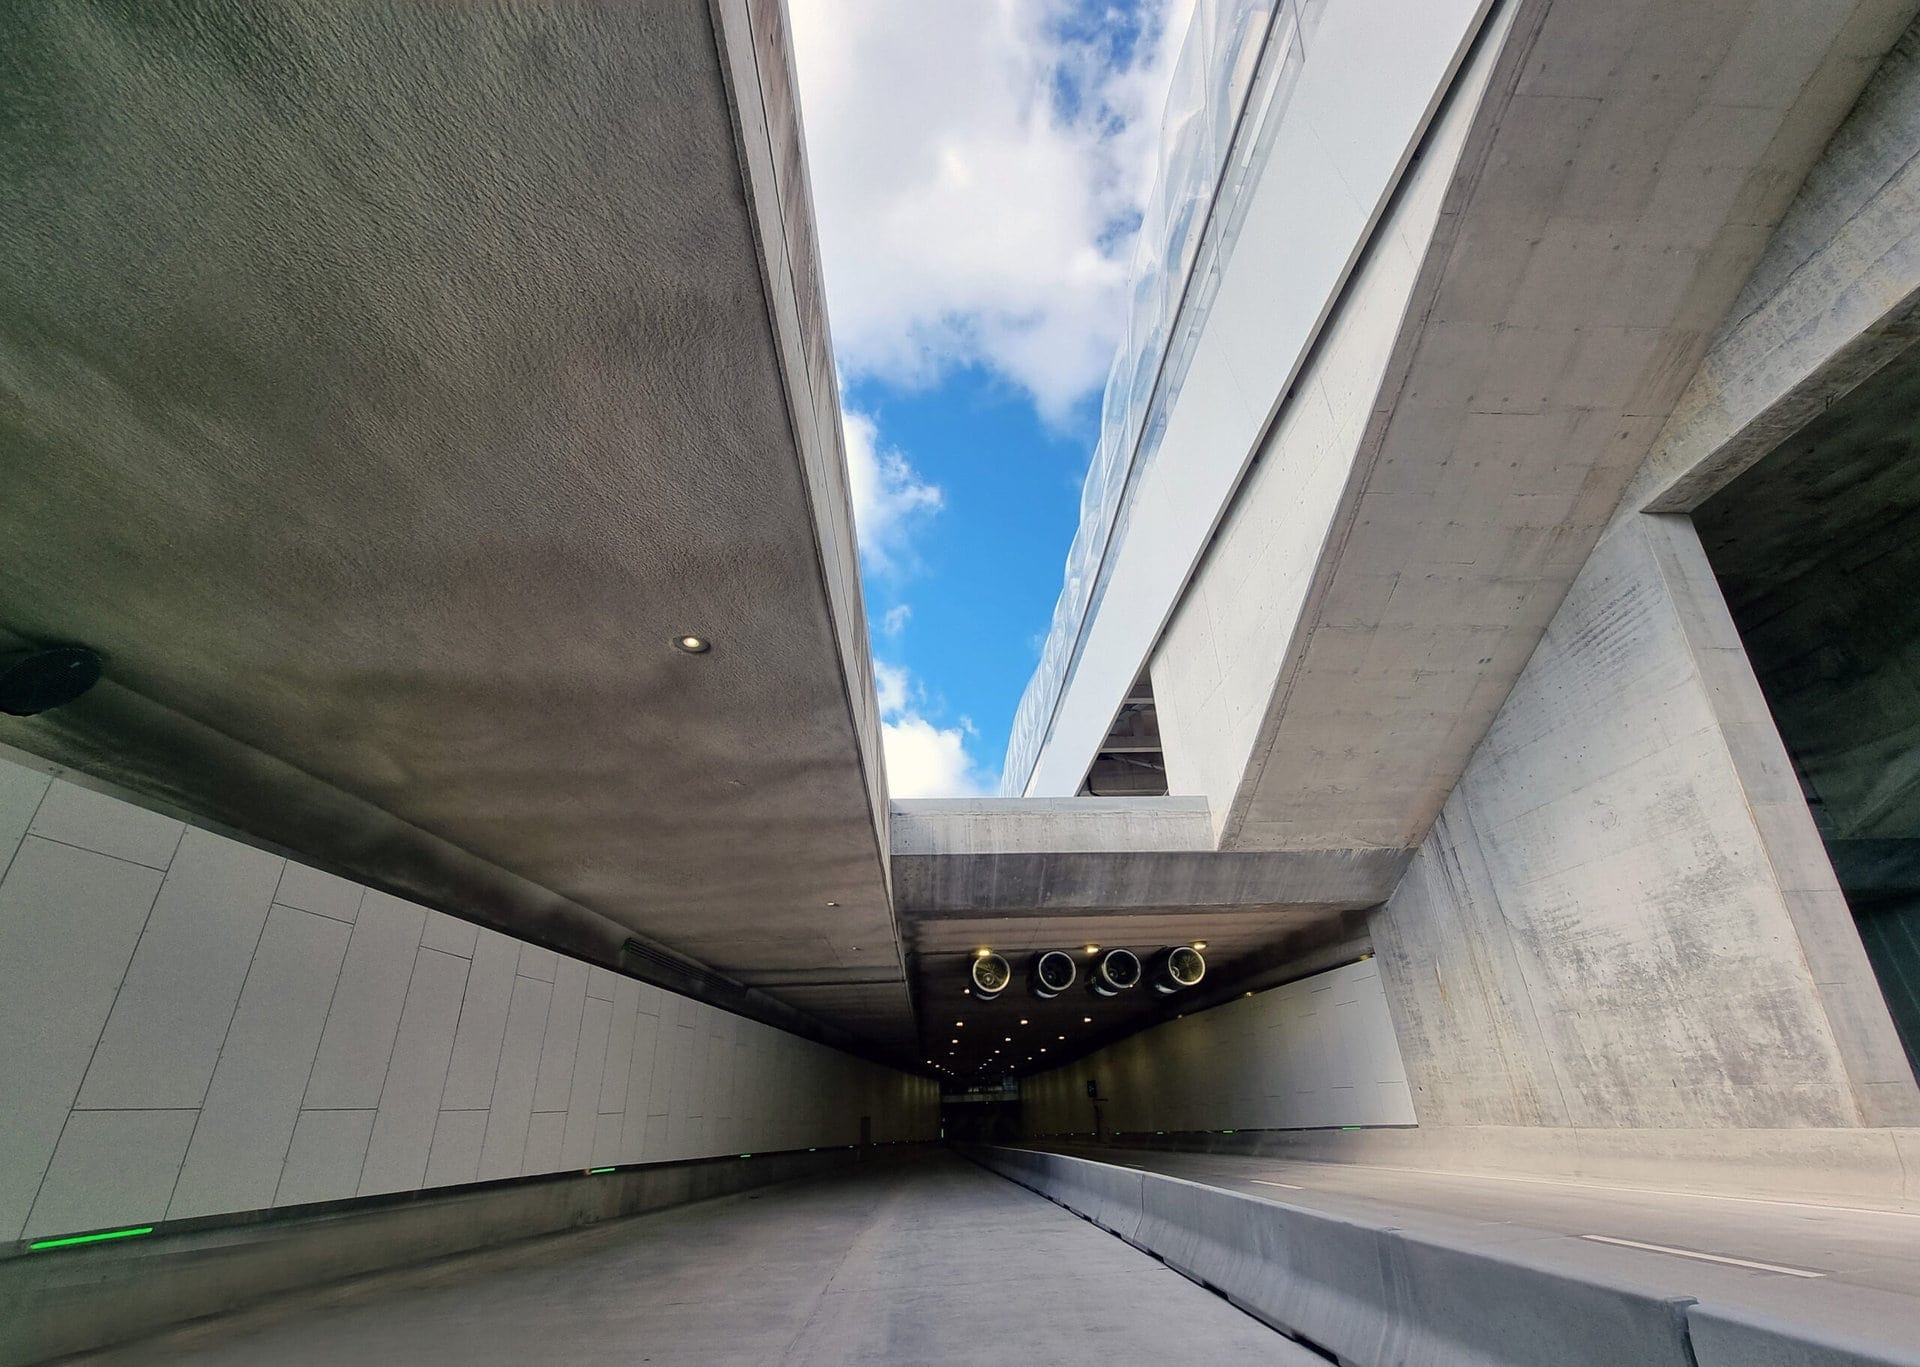 Op donderdagavond 11 mei wordt de Margaretatunnel in Mechelen afgesloten voor alle verkeer voor een noodplanningsoefening.